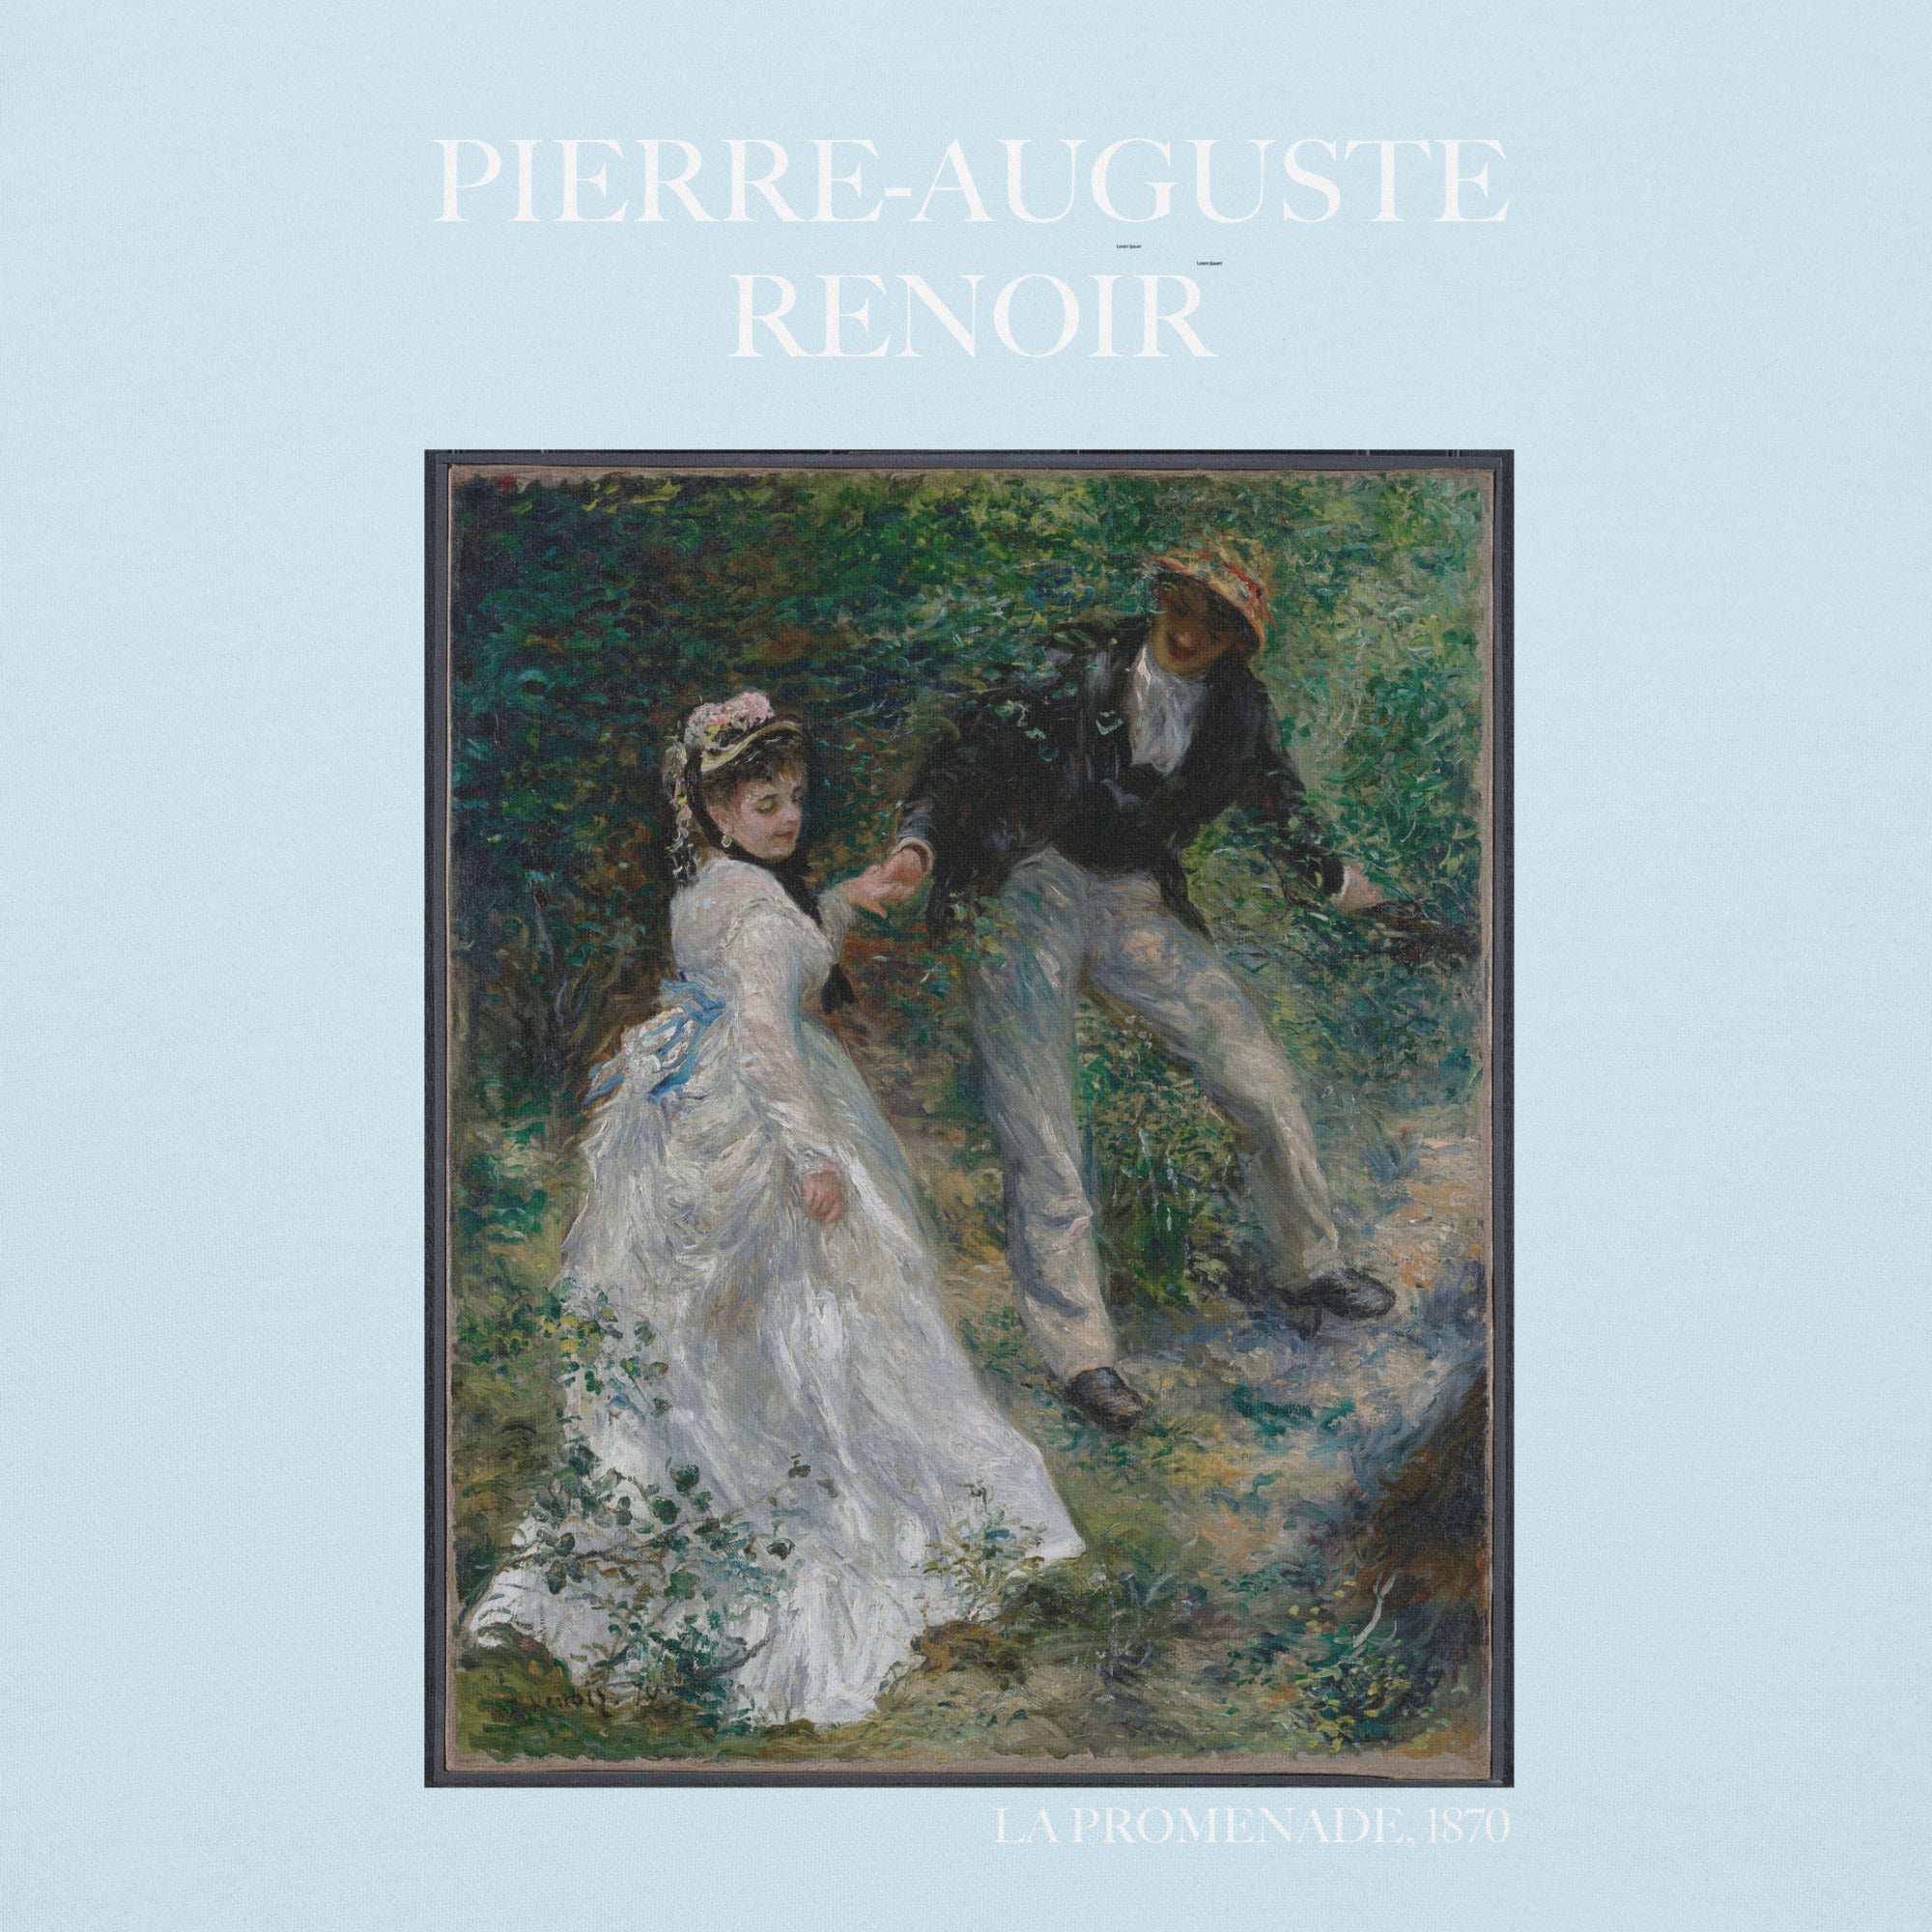 Pierre-Auguste Renoir 'La Promenade' Famous Painting Hoodie | Unisex Premium Art Hoodie